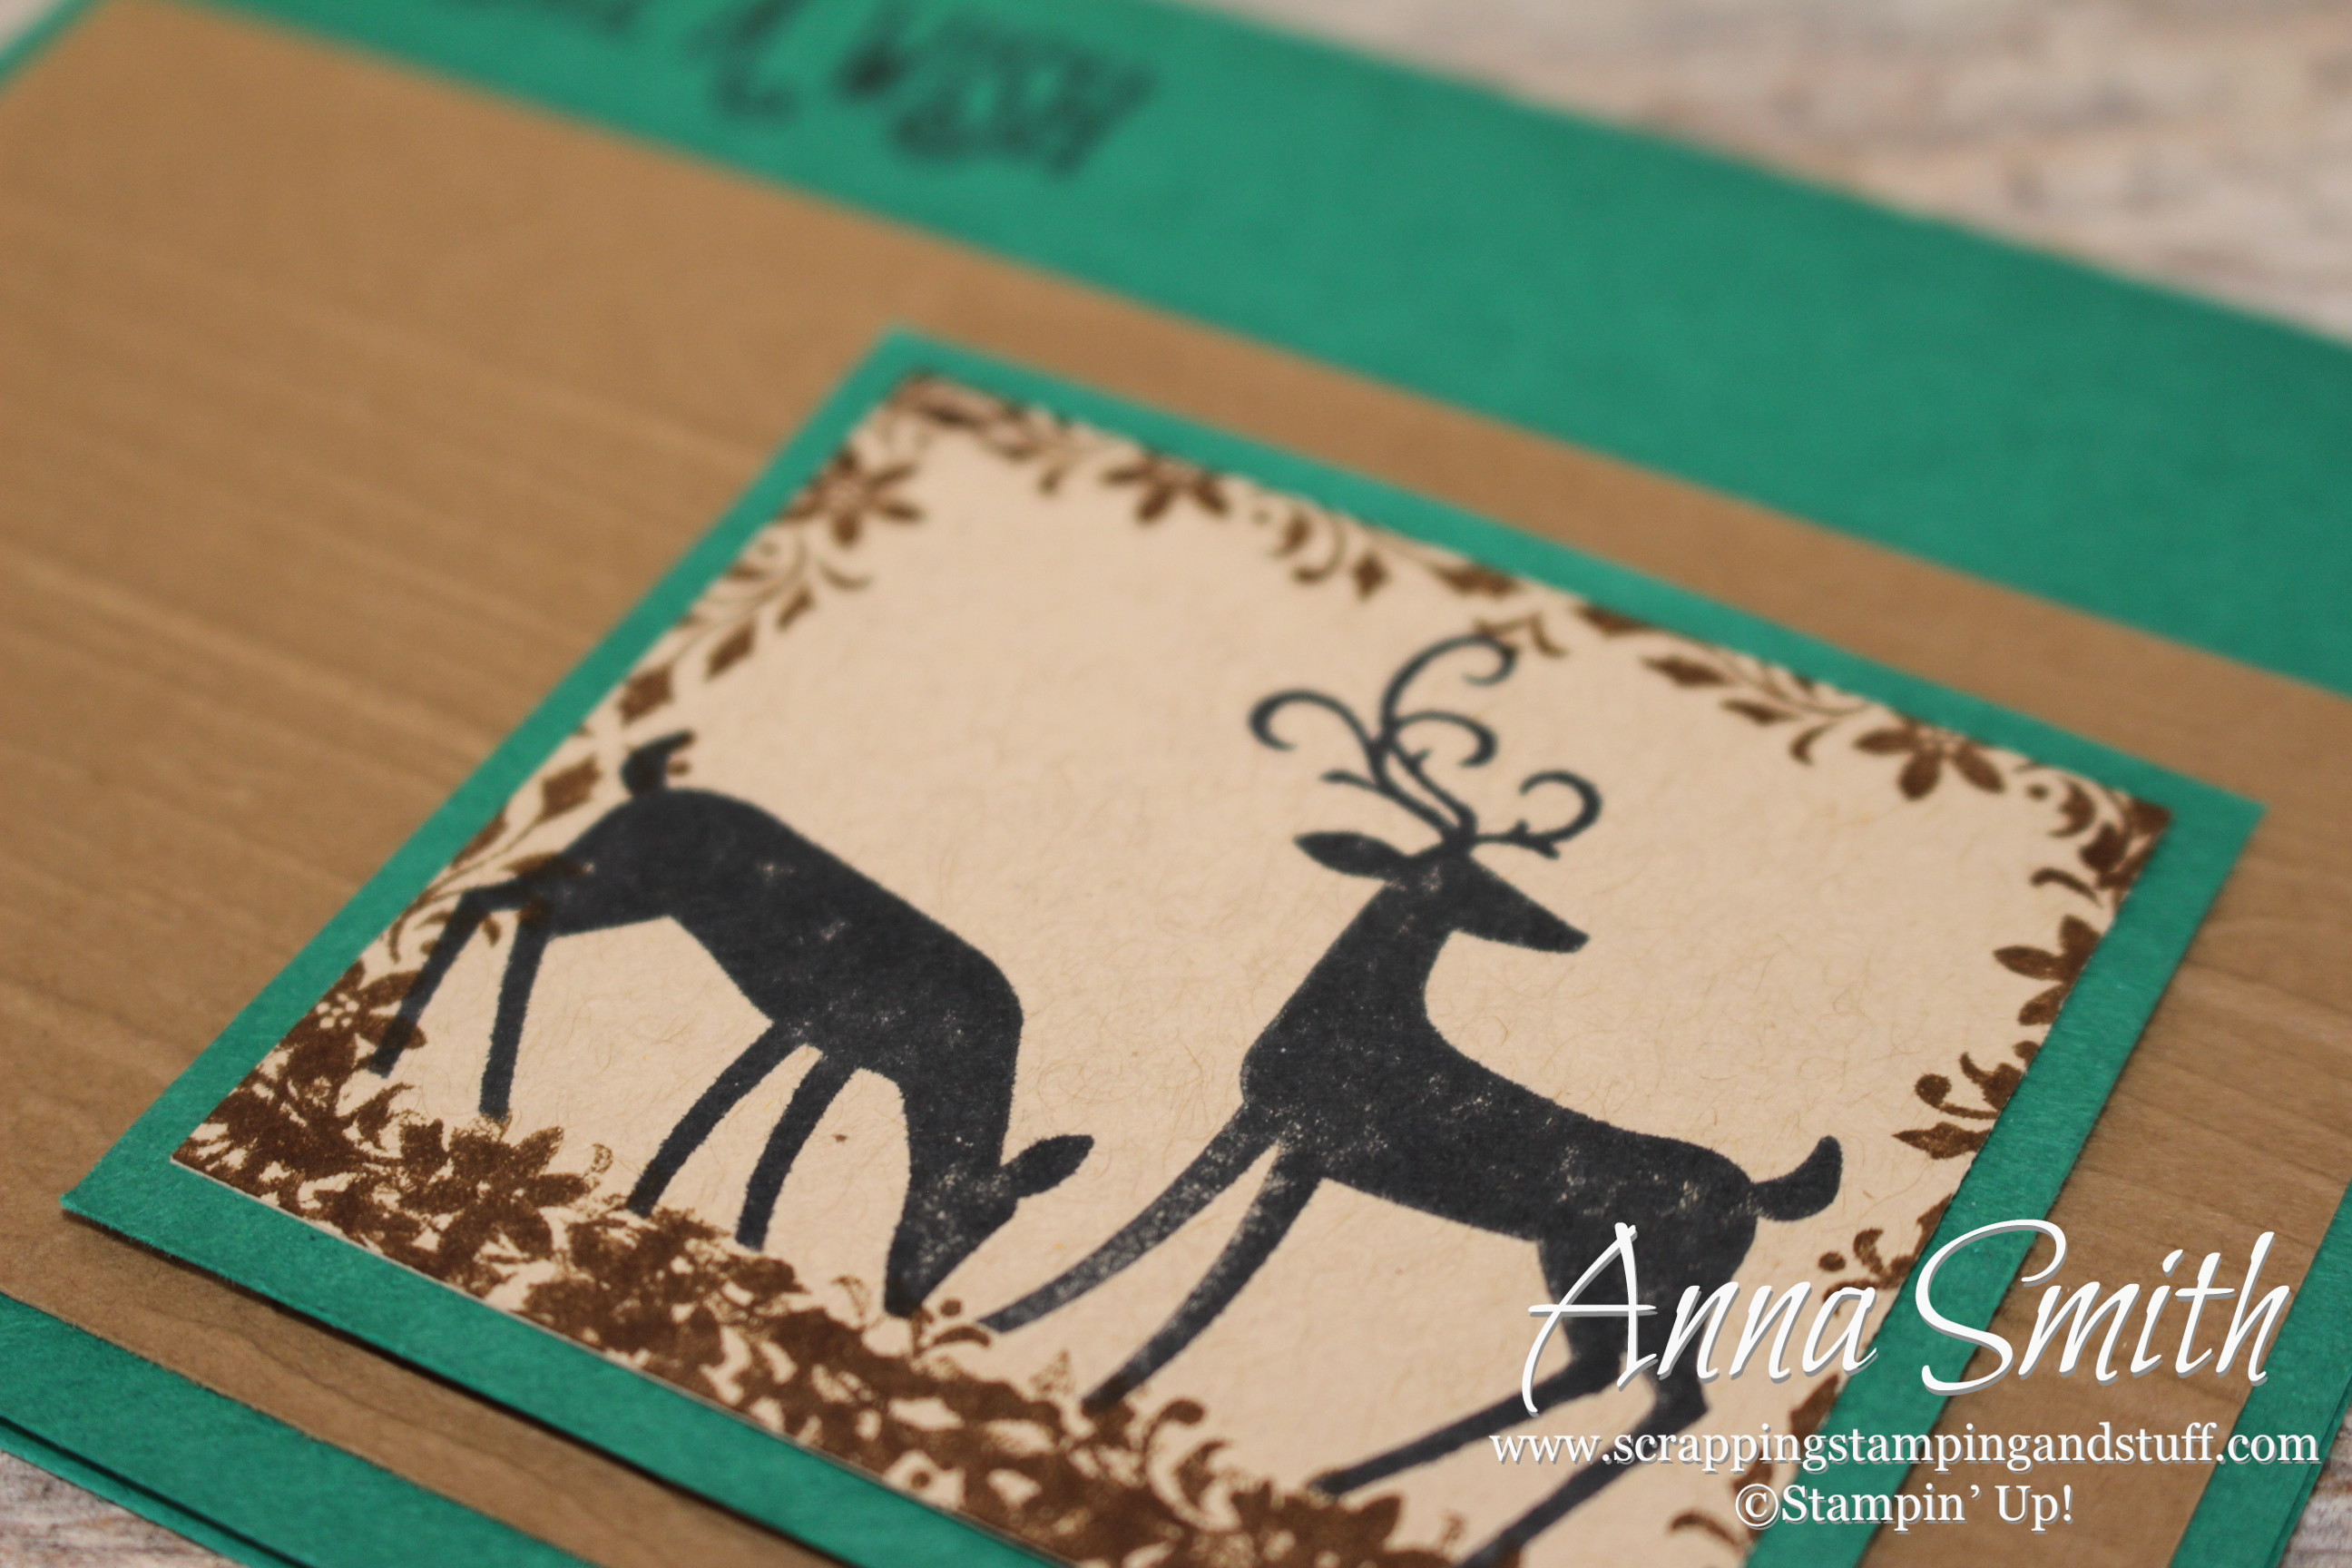 Dashing Deer Birthday Card with Stampin’ Up! Dashing Deer